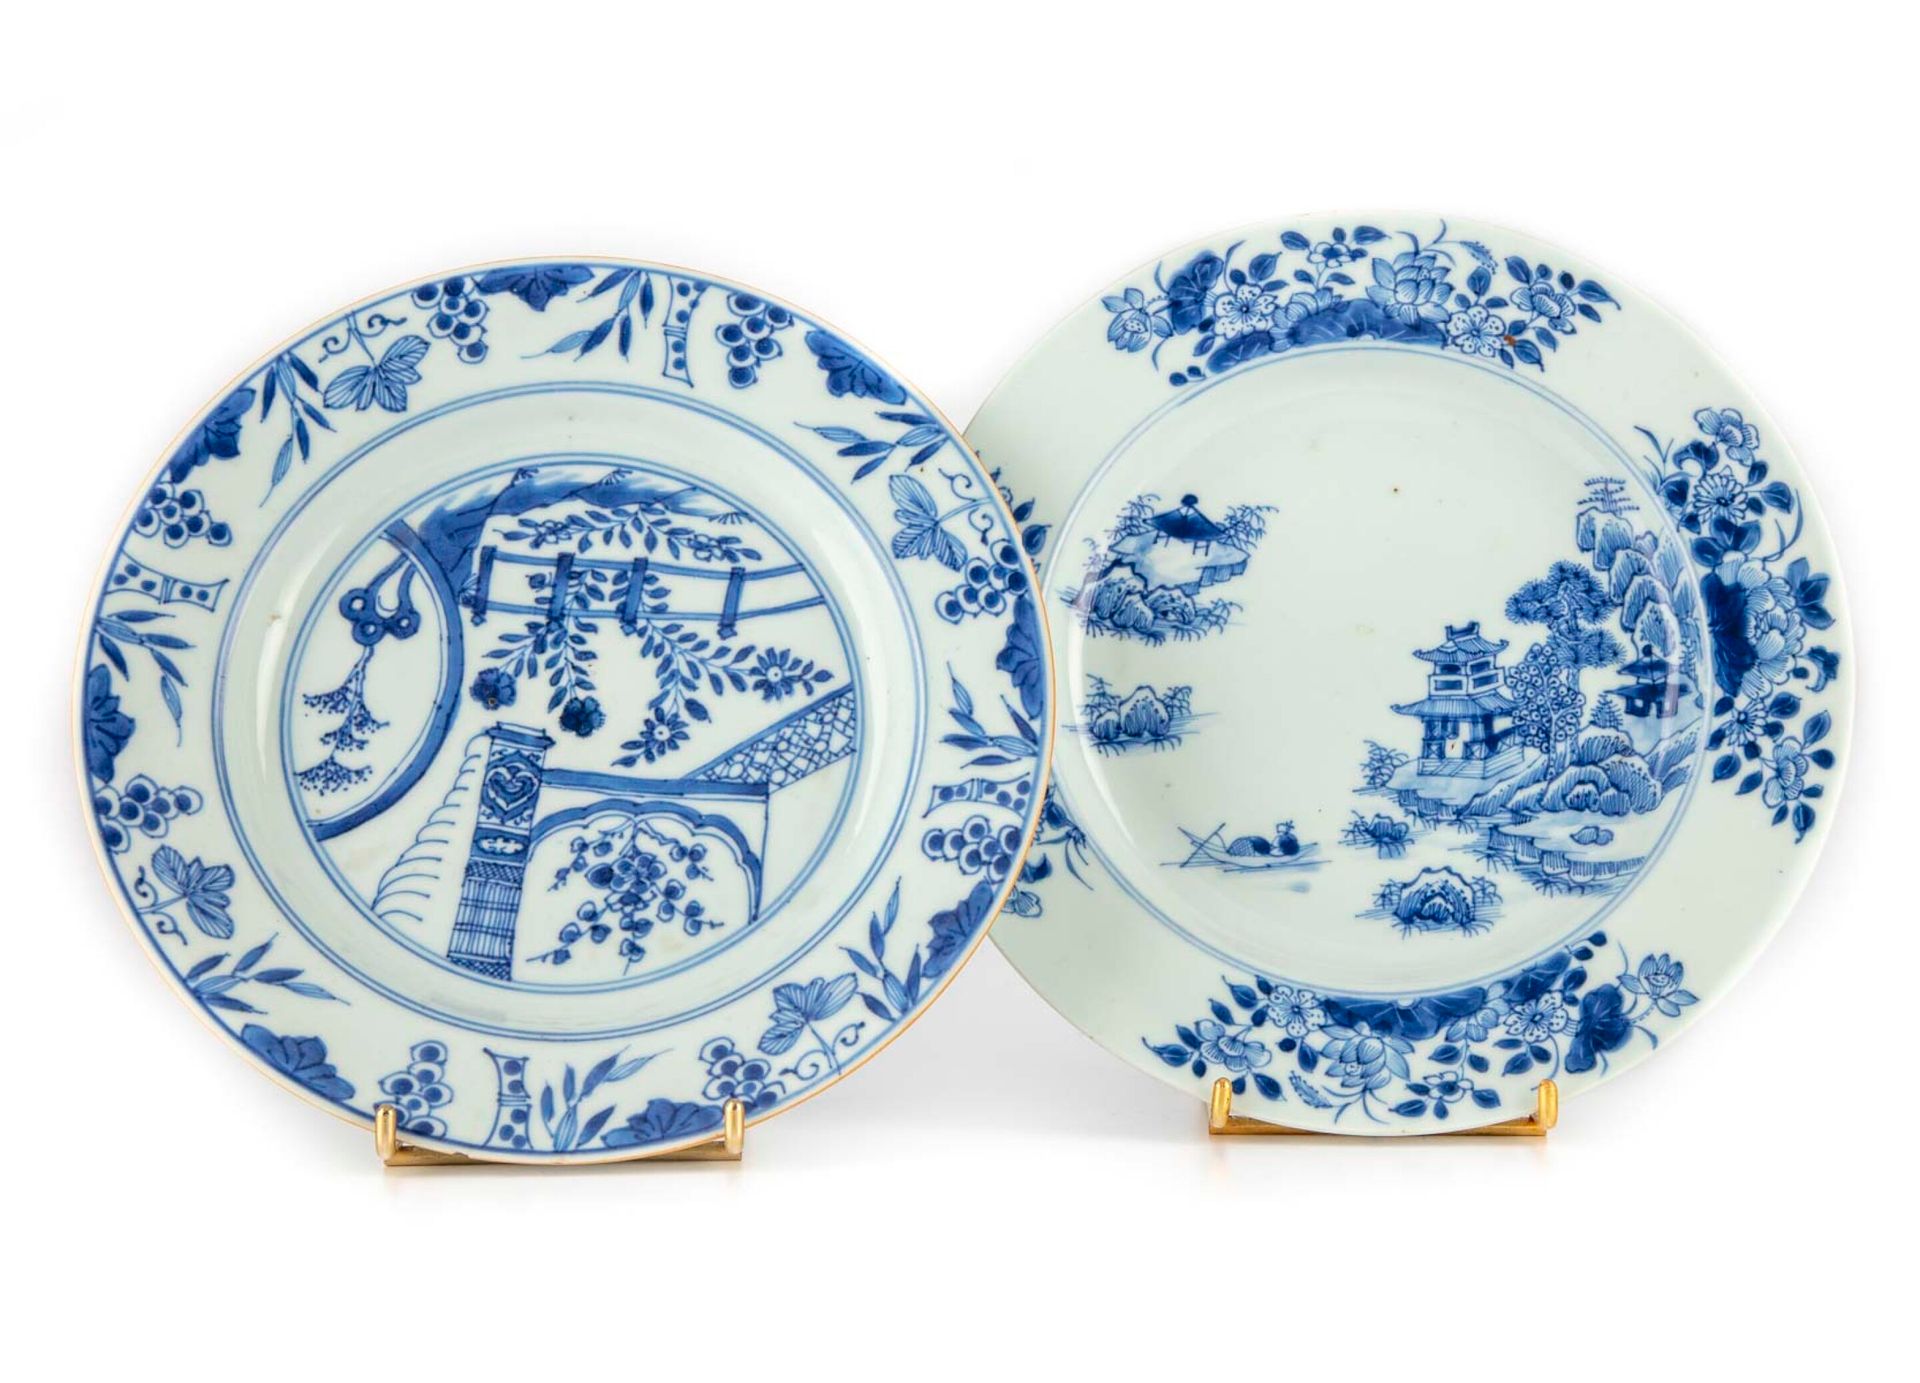 CHINE 中国

两只蓝色单色装饰的湖泊风景瓷盘，上面有塔楼和露台上的花朵

18世纪，乾隆时期(1736-1795)

D.23厘米

一个盘子有裂纹和碎片